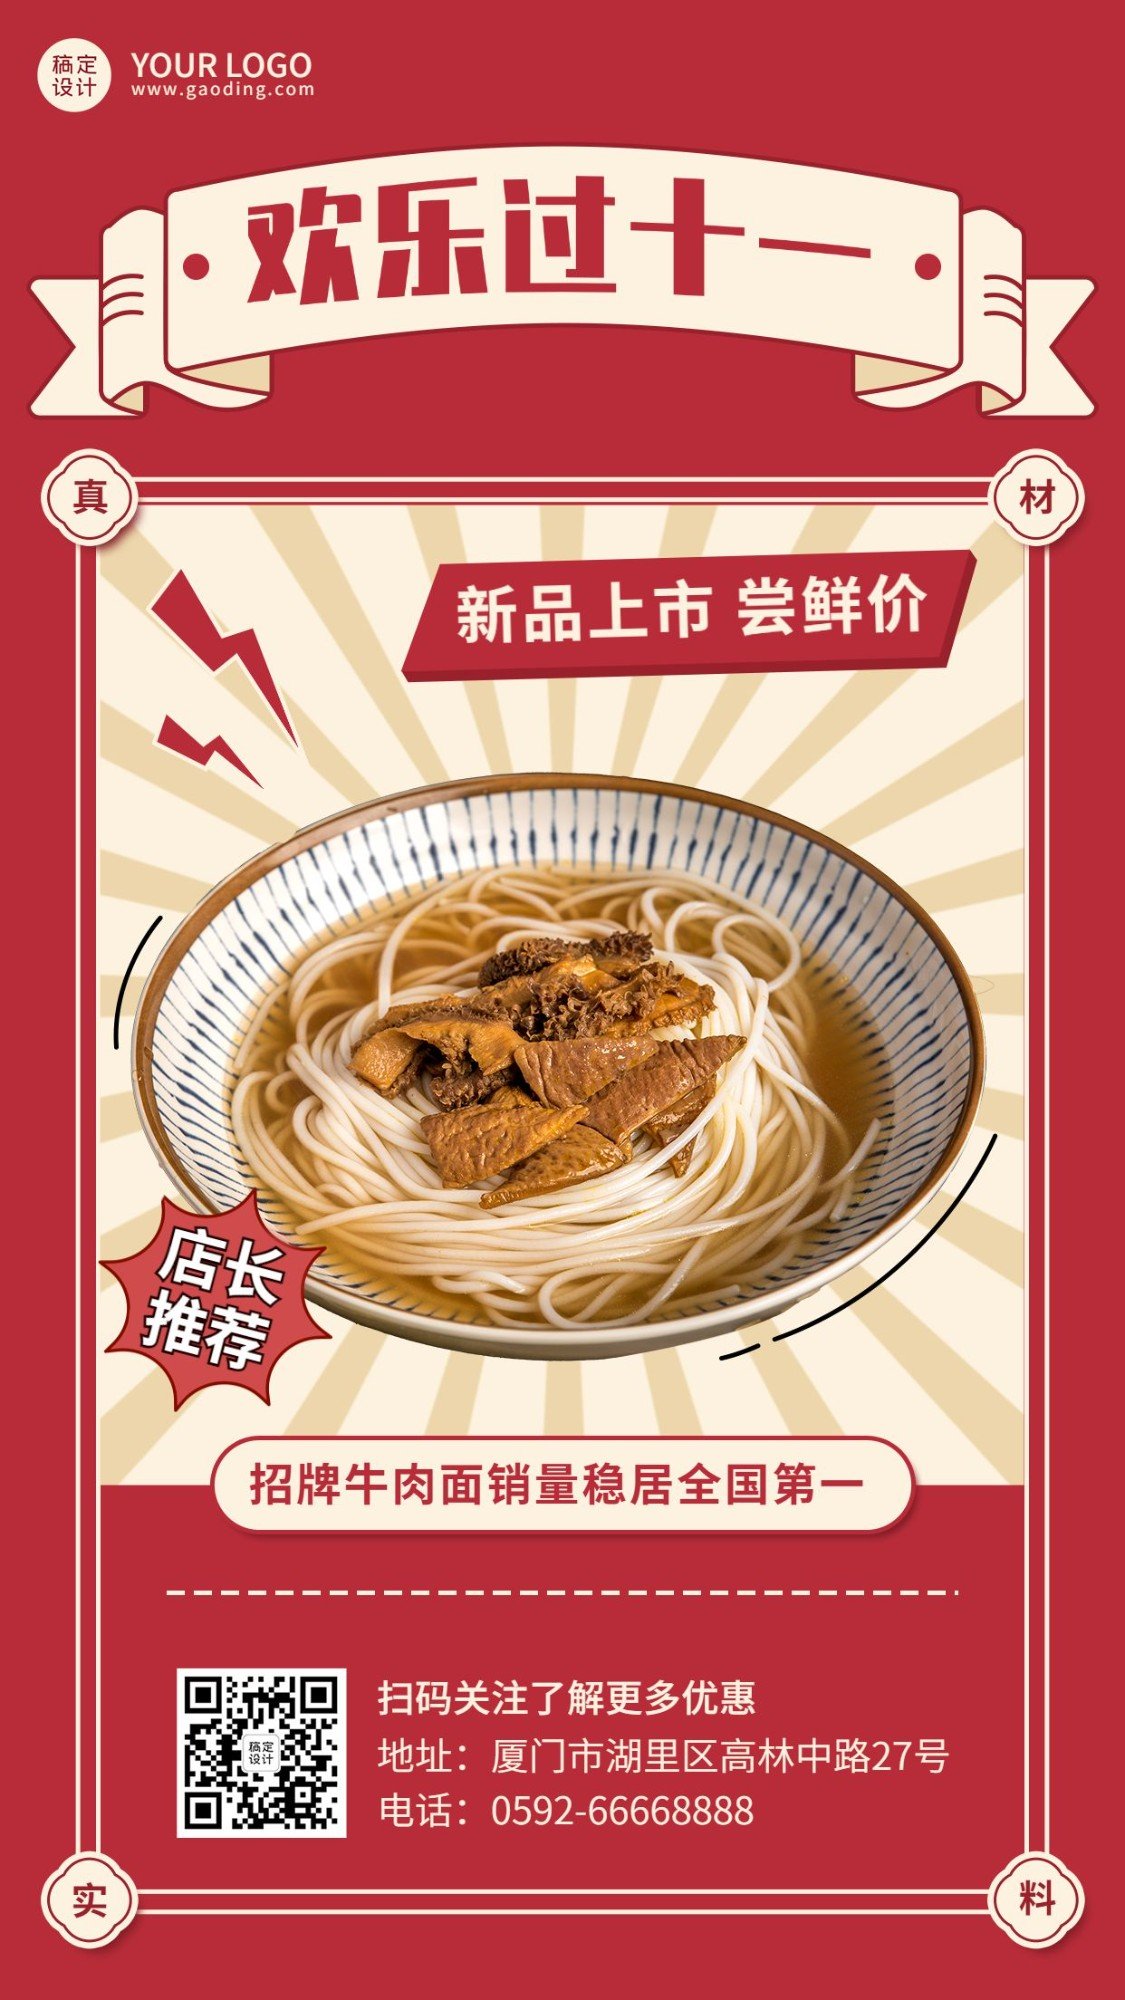 十一国庆餐饮促销喜庆手机海报预览效果